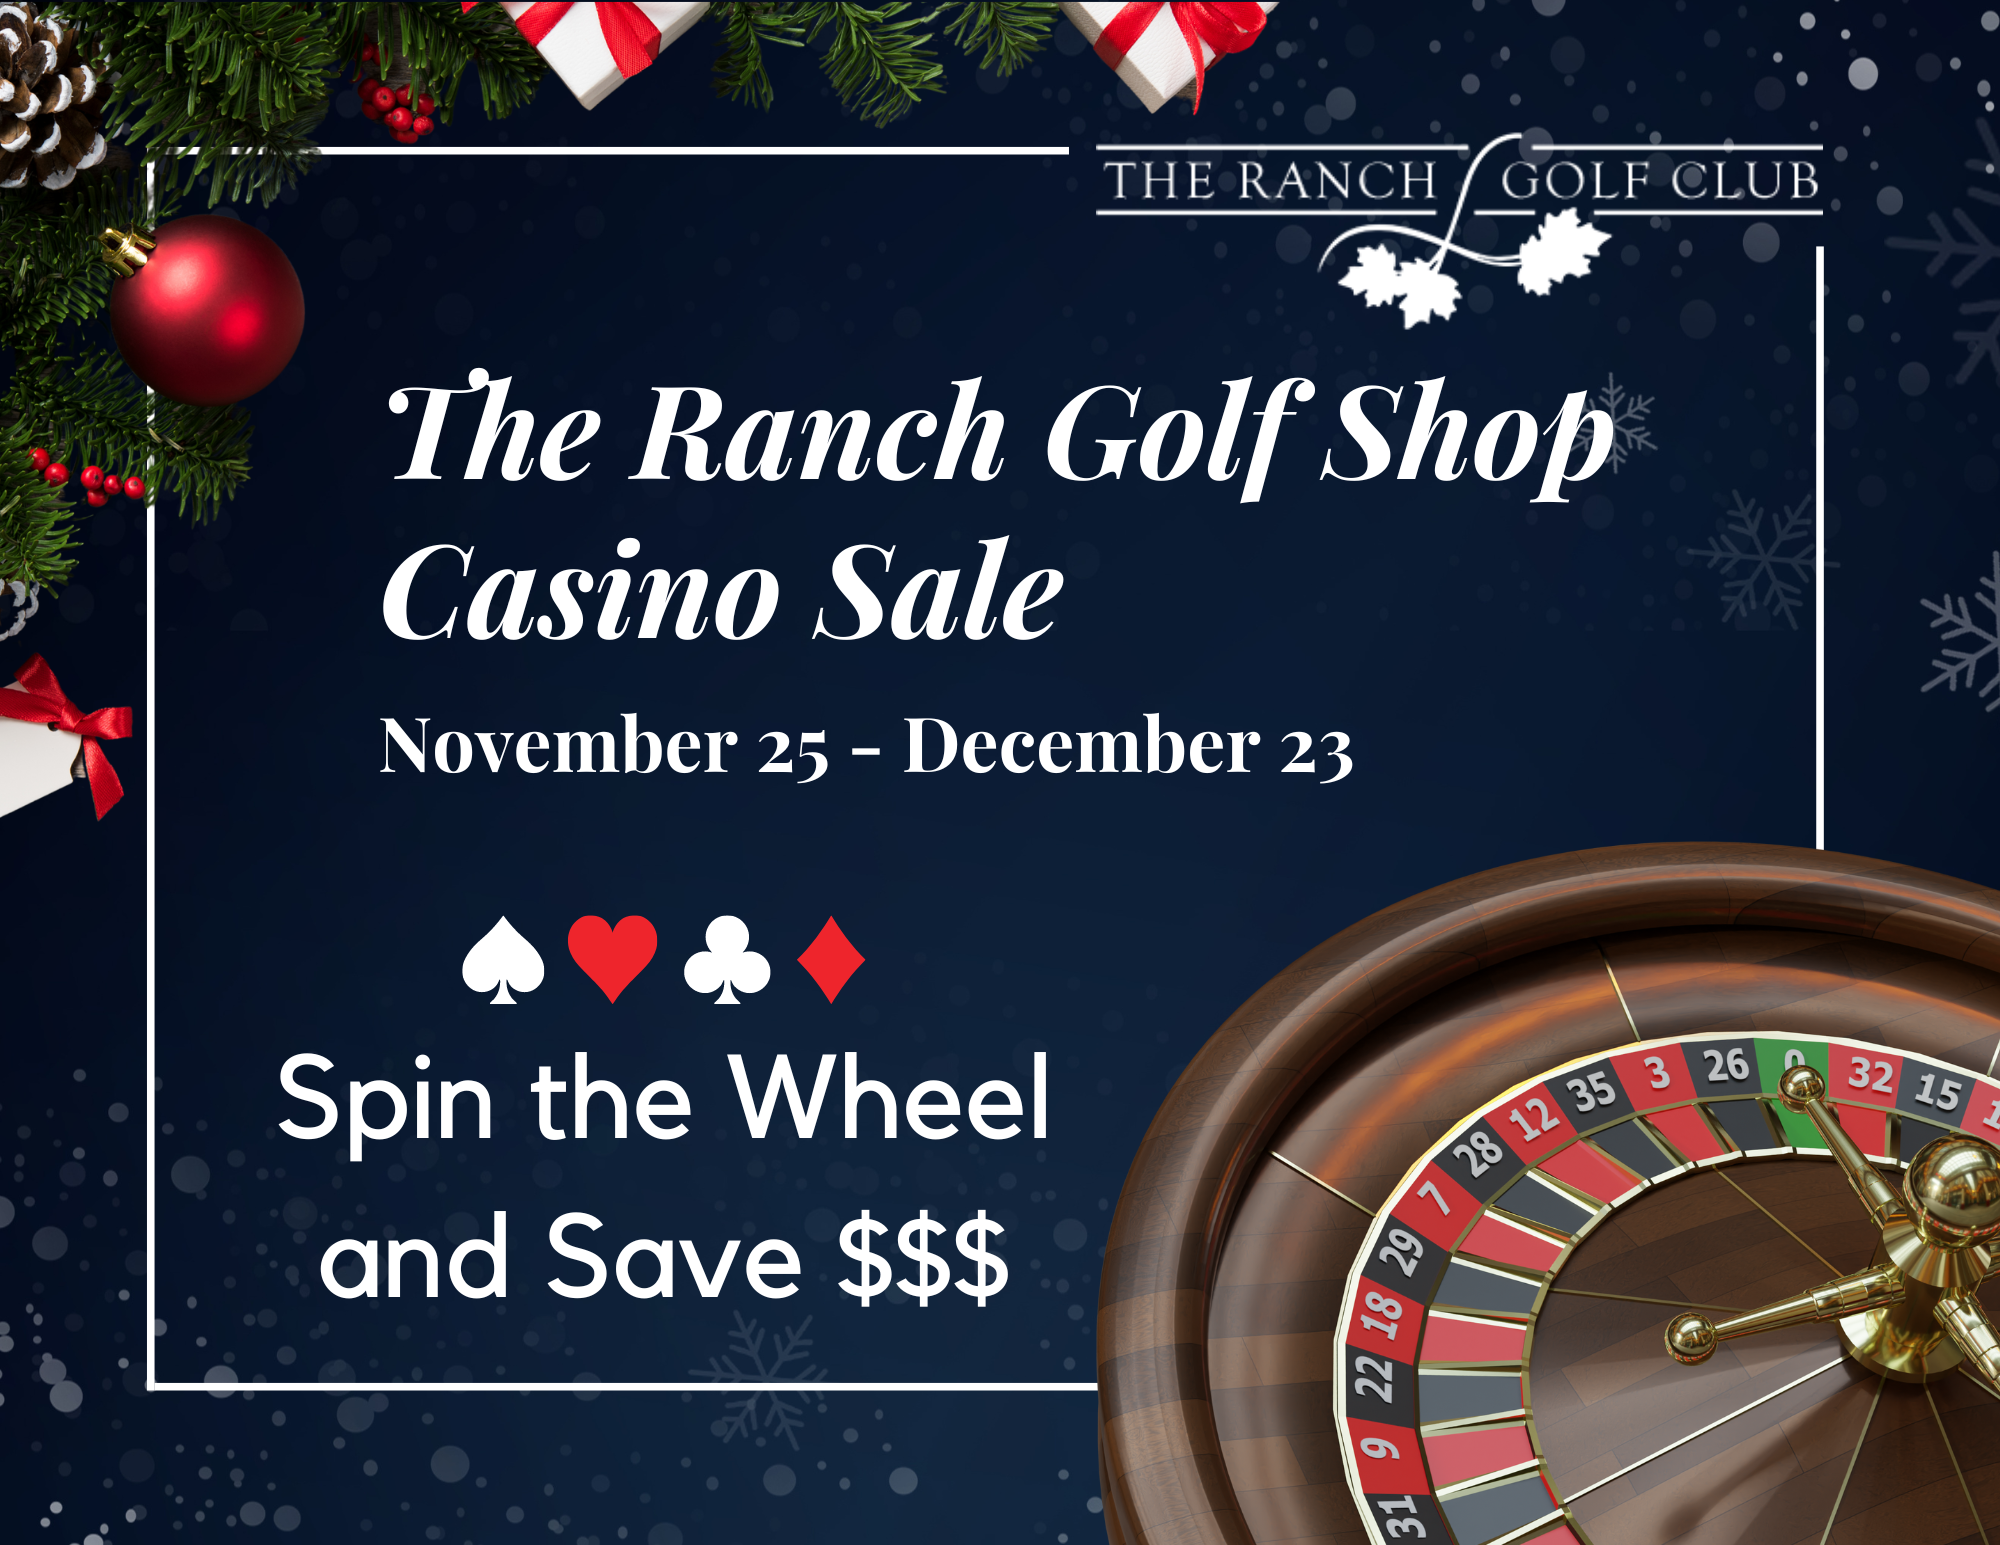 The Ranch Casino Sale